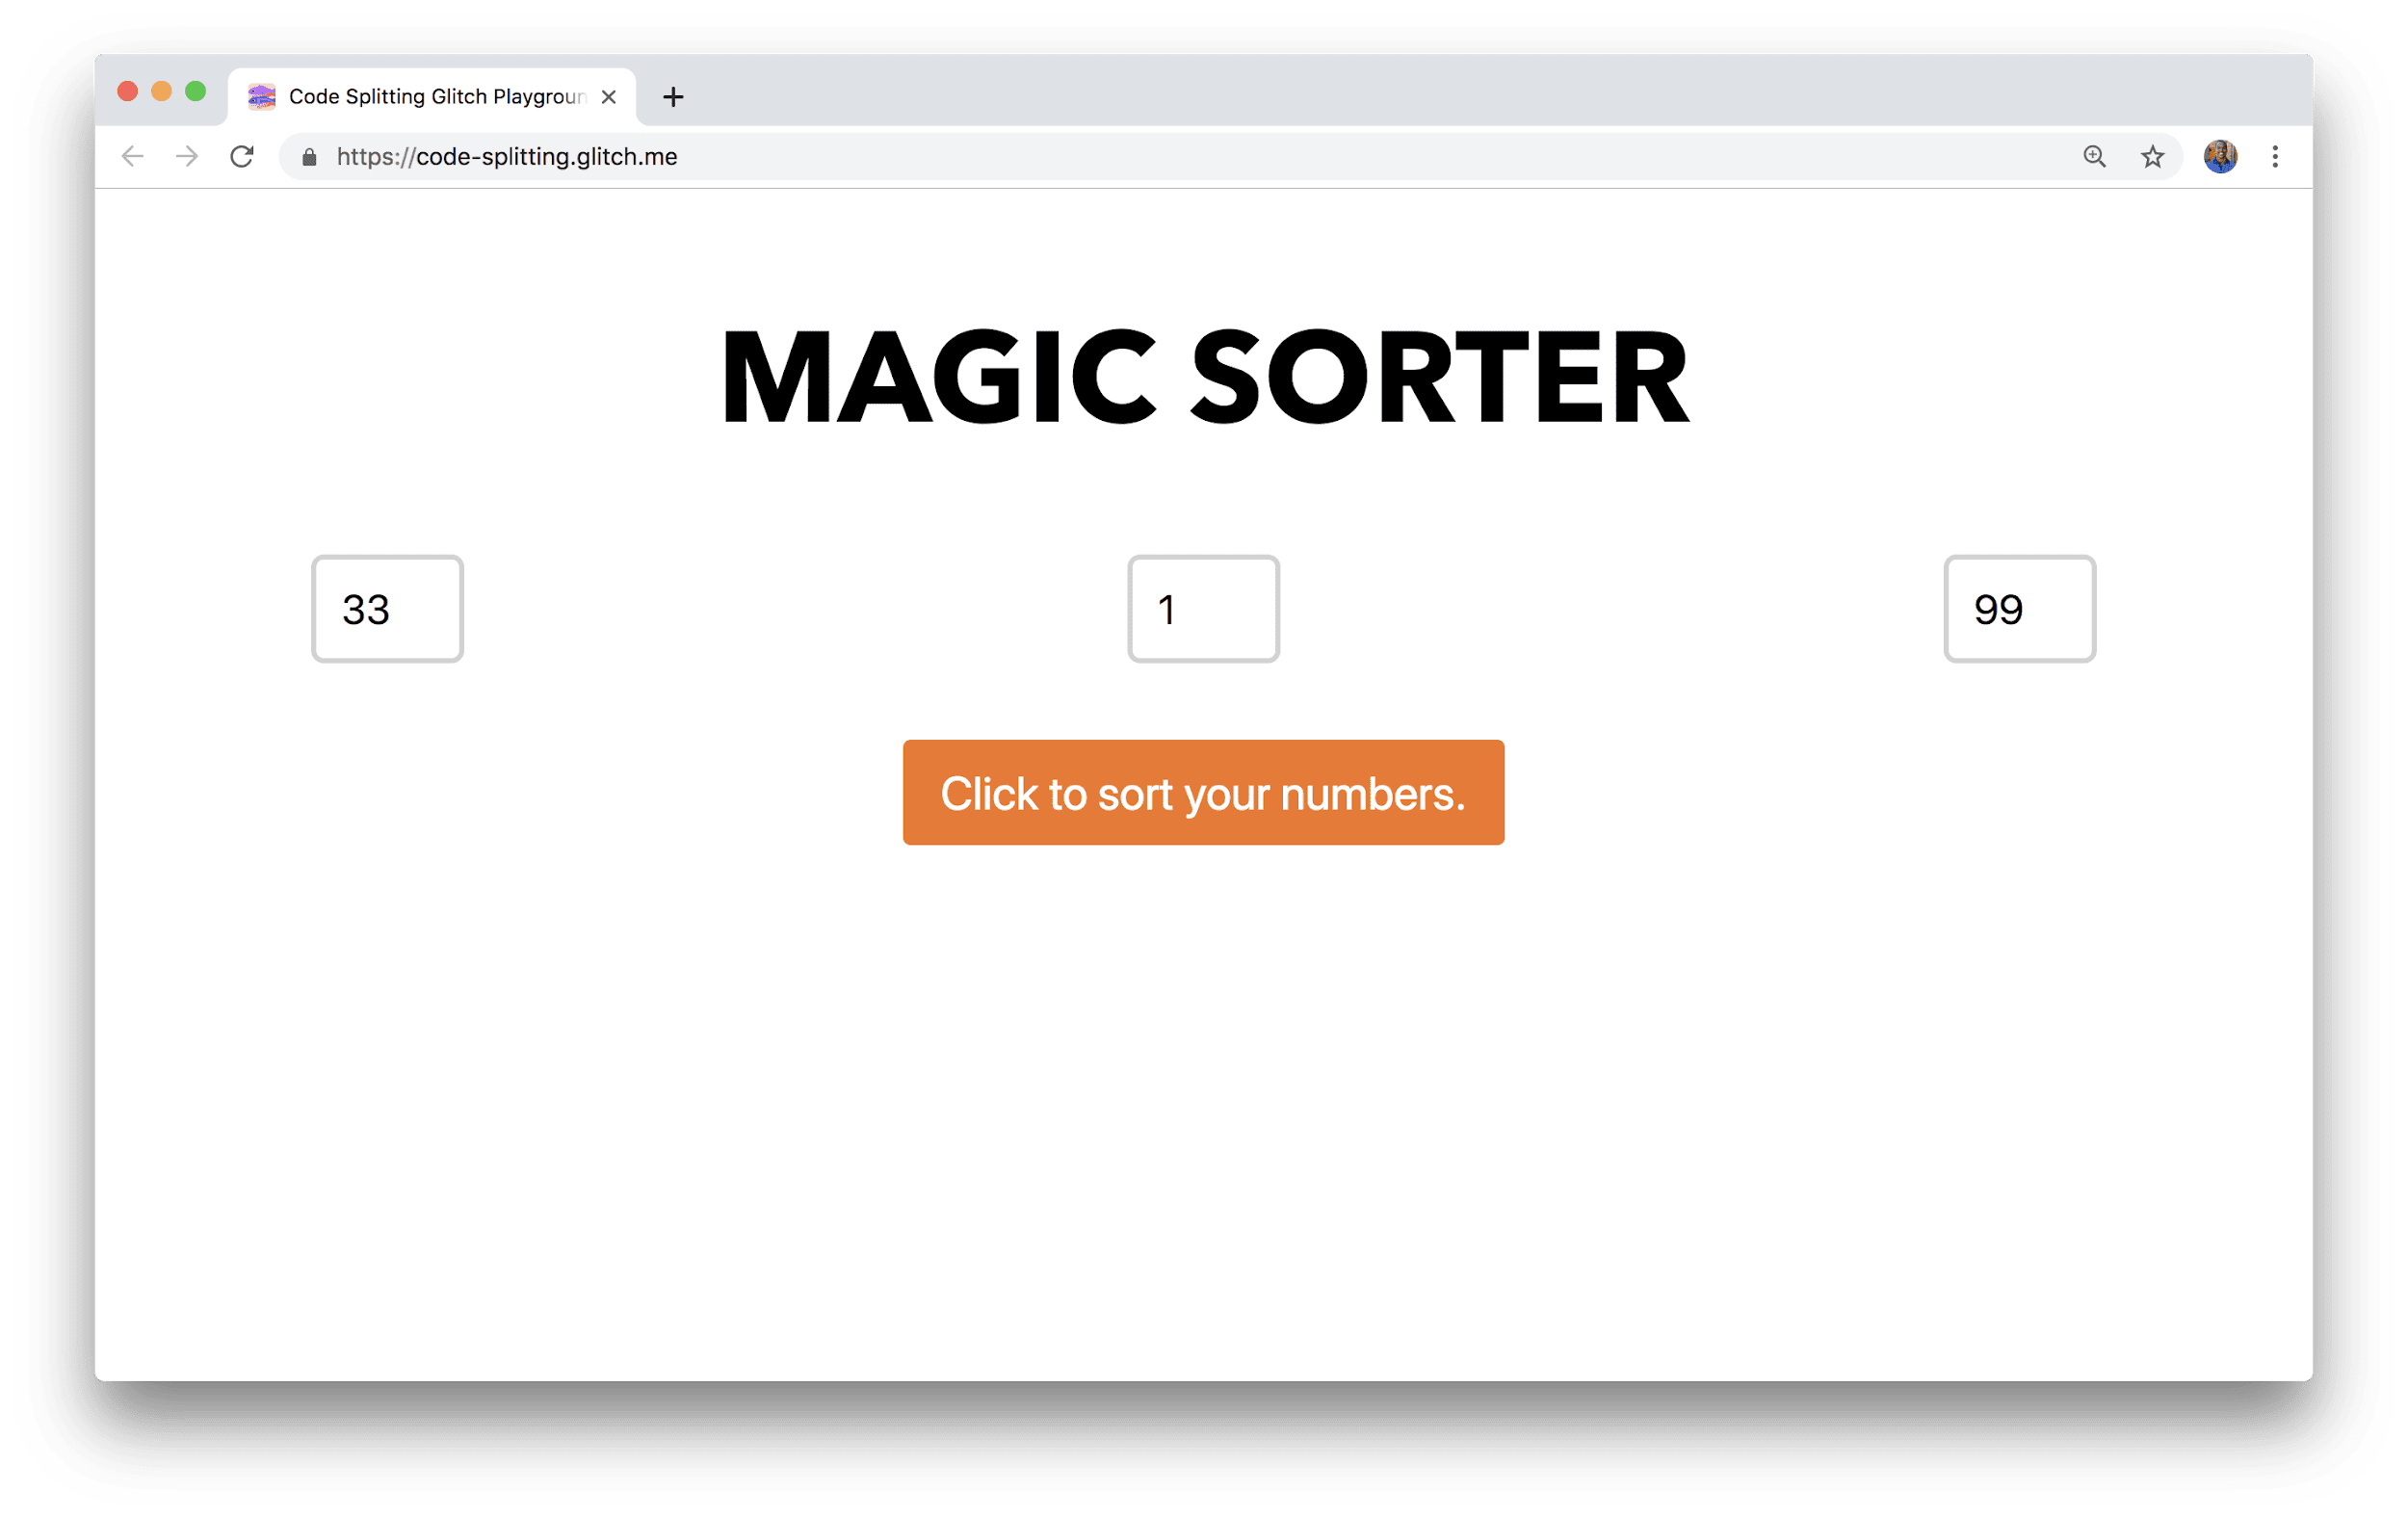 Uma janela do navegador mostra um aplicativo chamado &quot;Magic Sorter&quot; com três campos para inserir números e um botão &quot;Classificar&quot;.